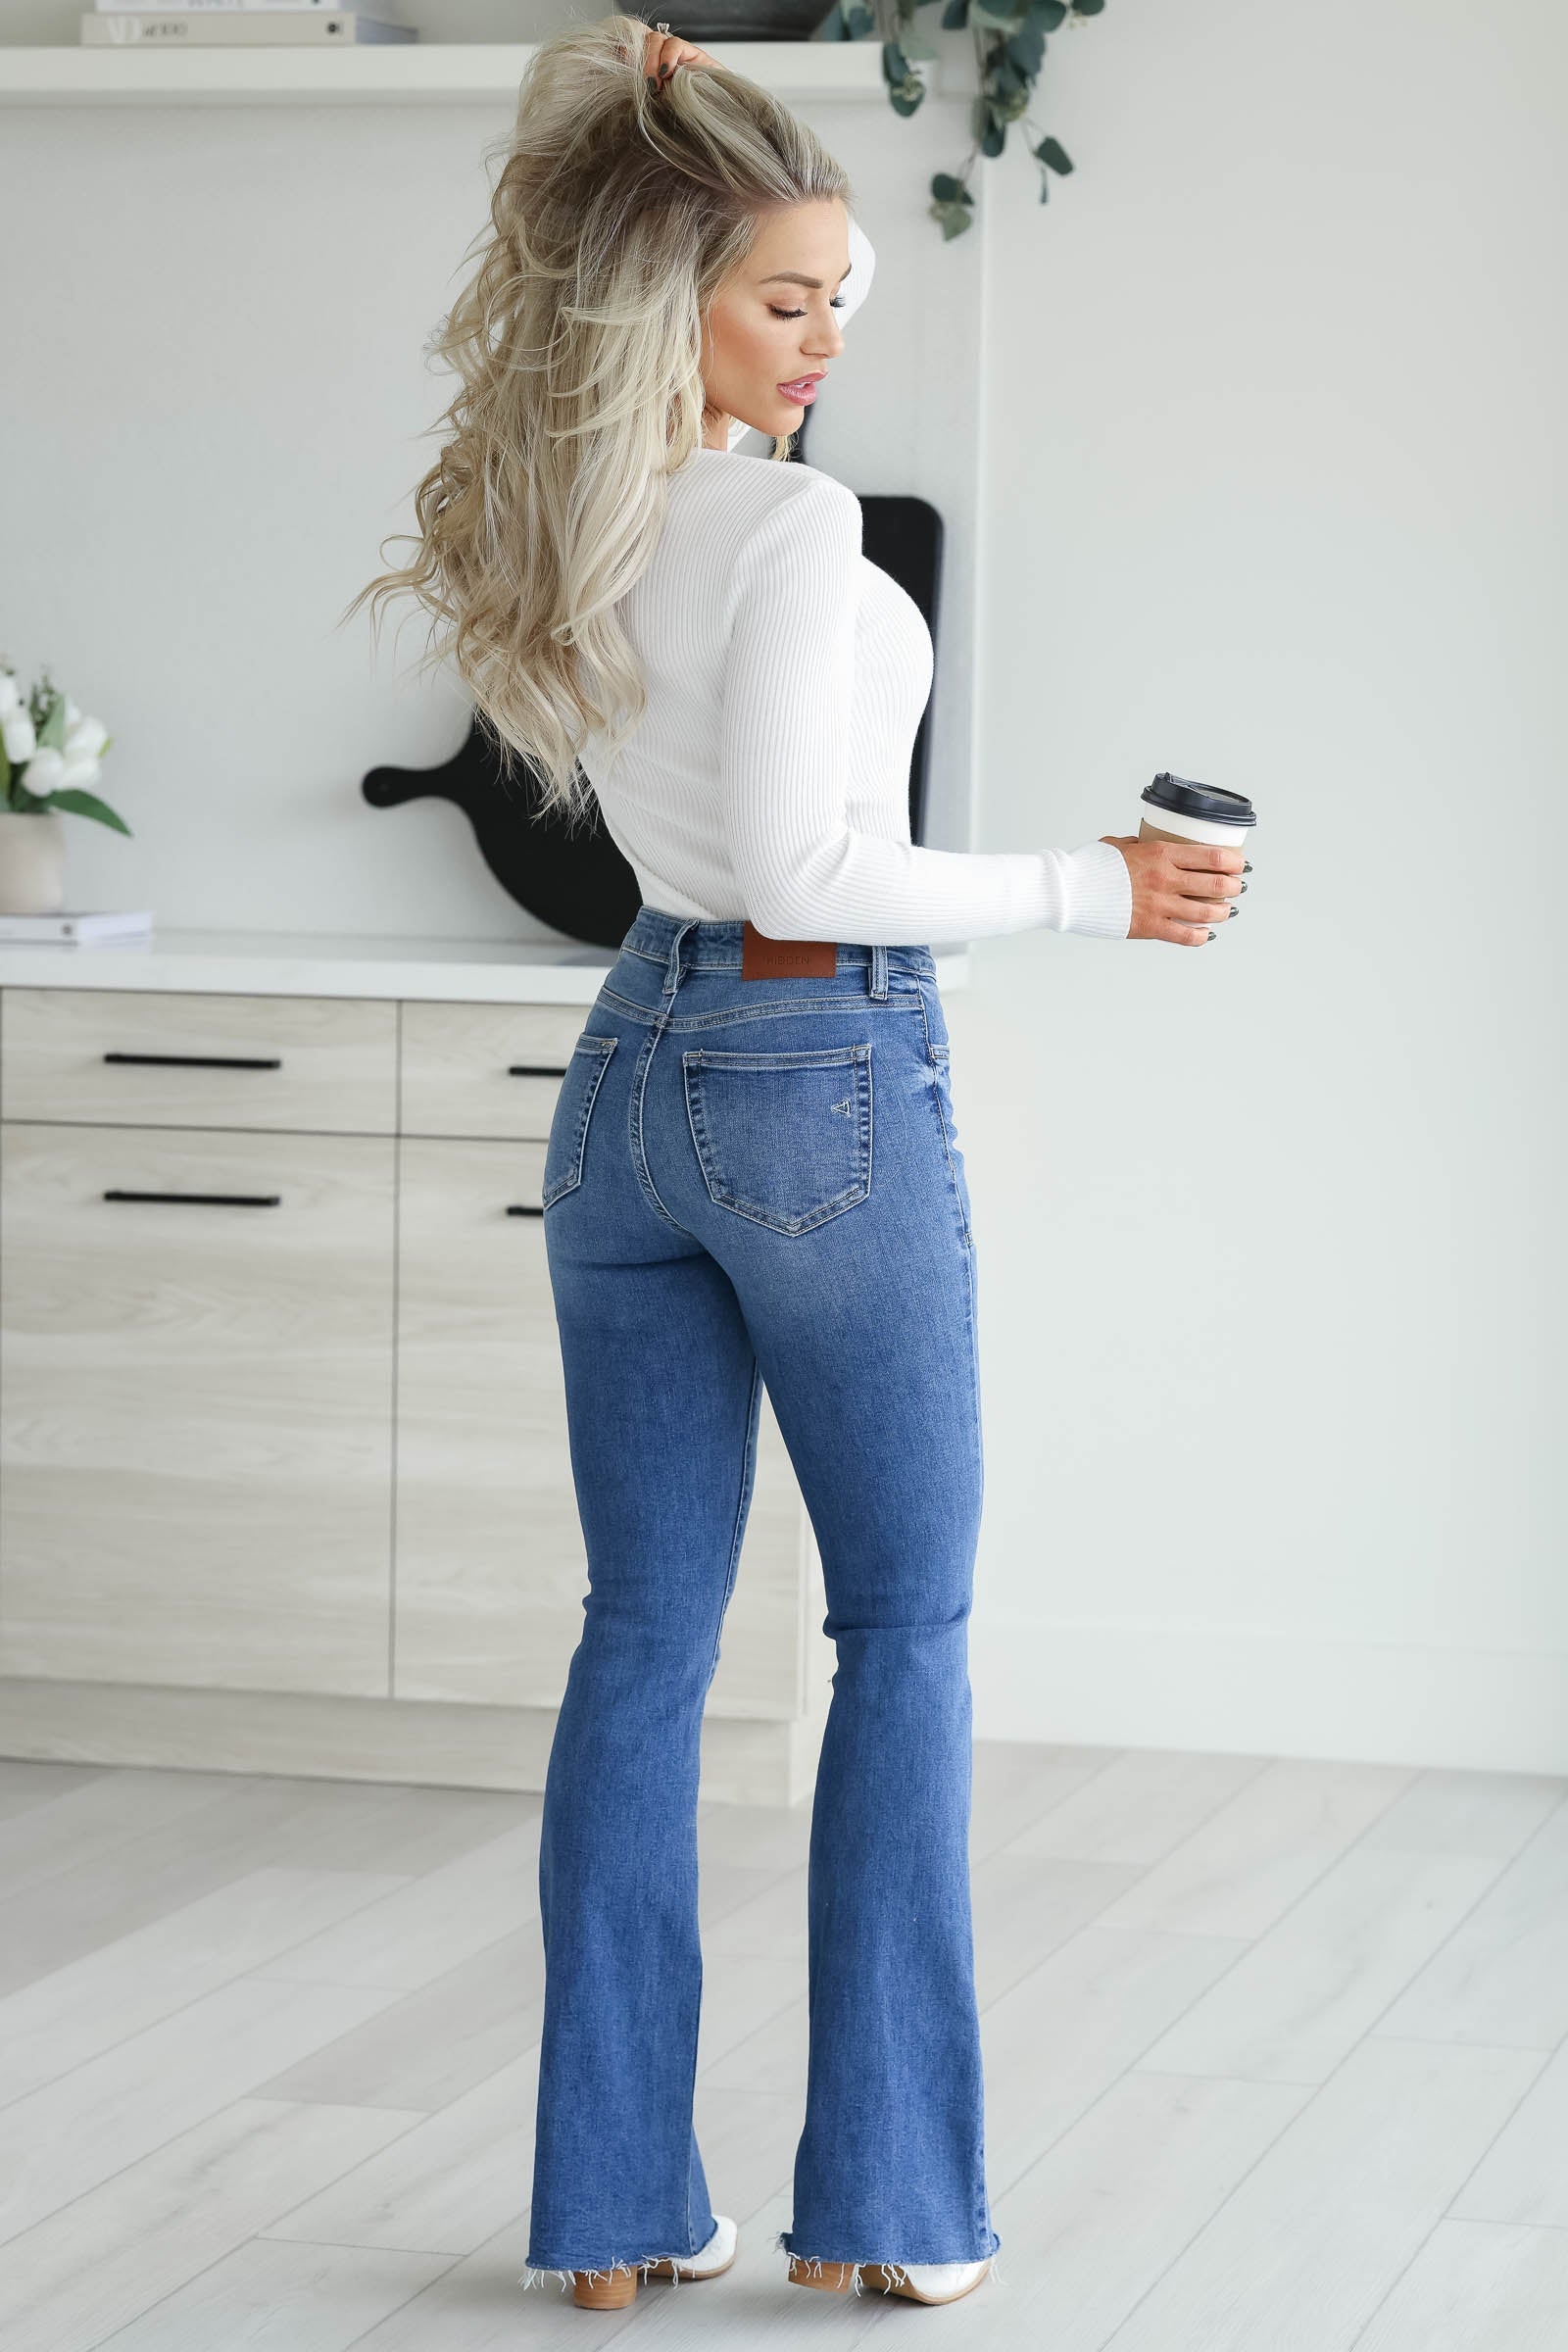 Groovy Flare Jeans – Top Shelf Wardrobe